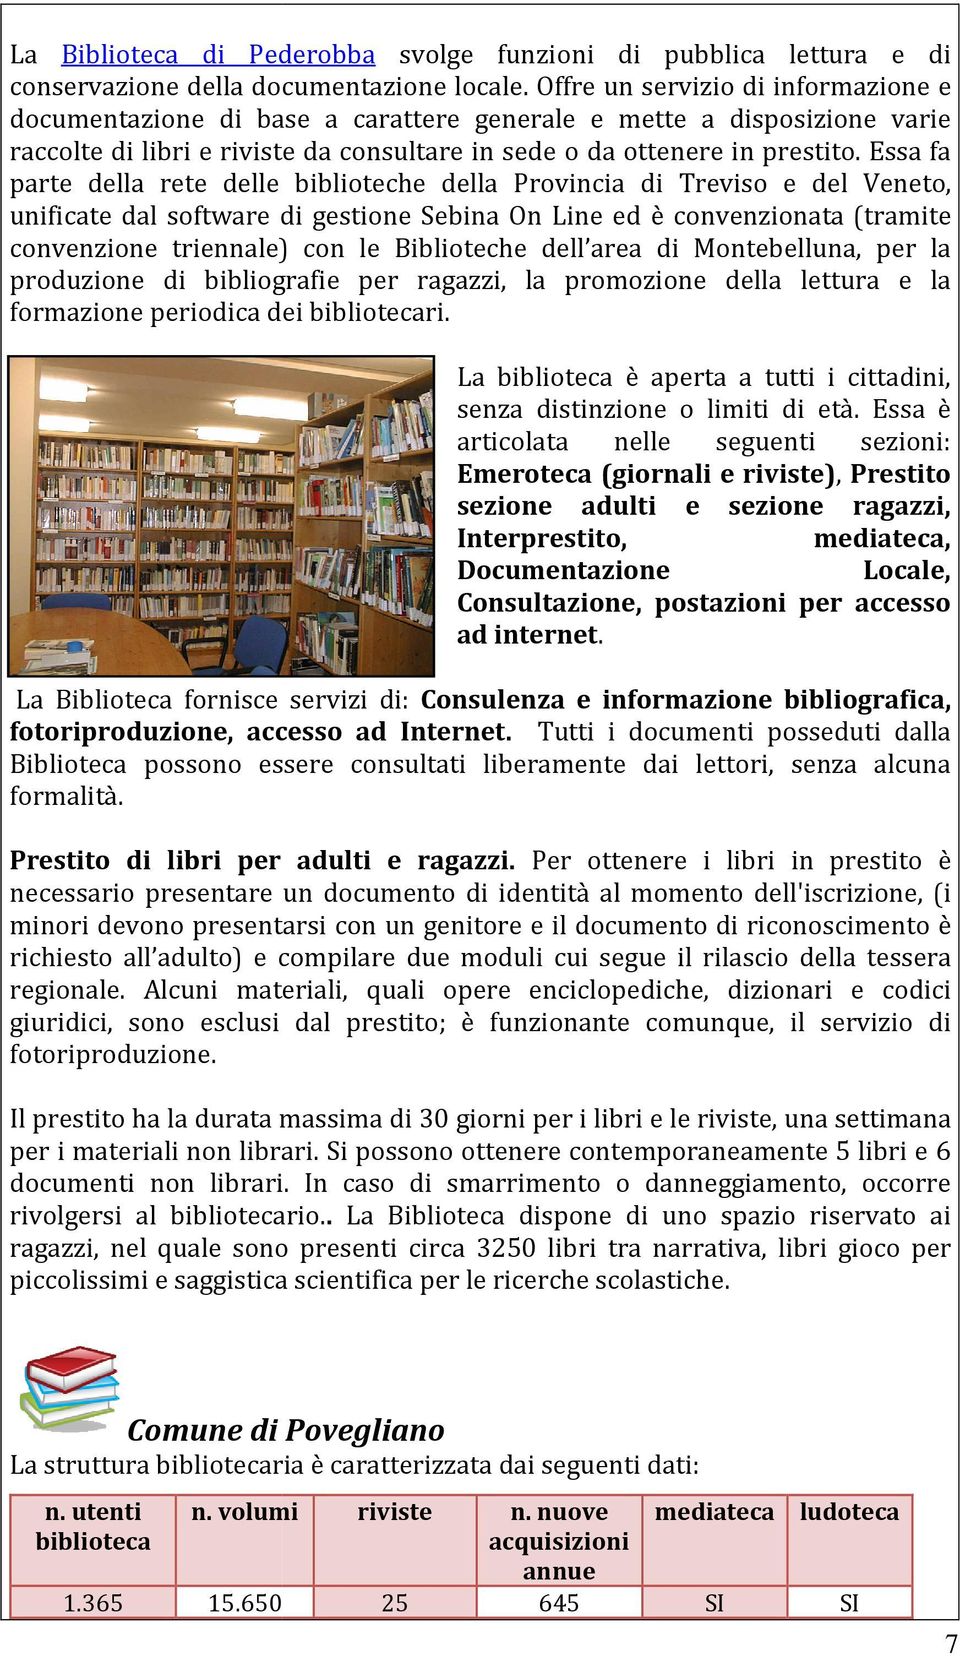 Essa fa parte della rete delle biblioteche della Provincia di Treviso e del Veneto, unificate dal software di gestione Sebina On Line ed è convenzionata (tramite convenzione triennale) con le